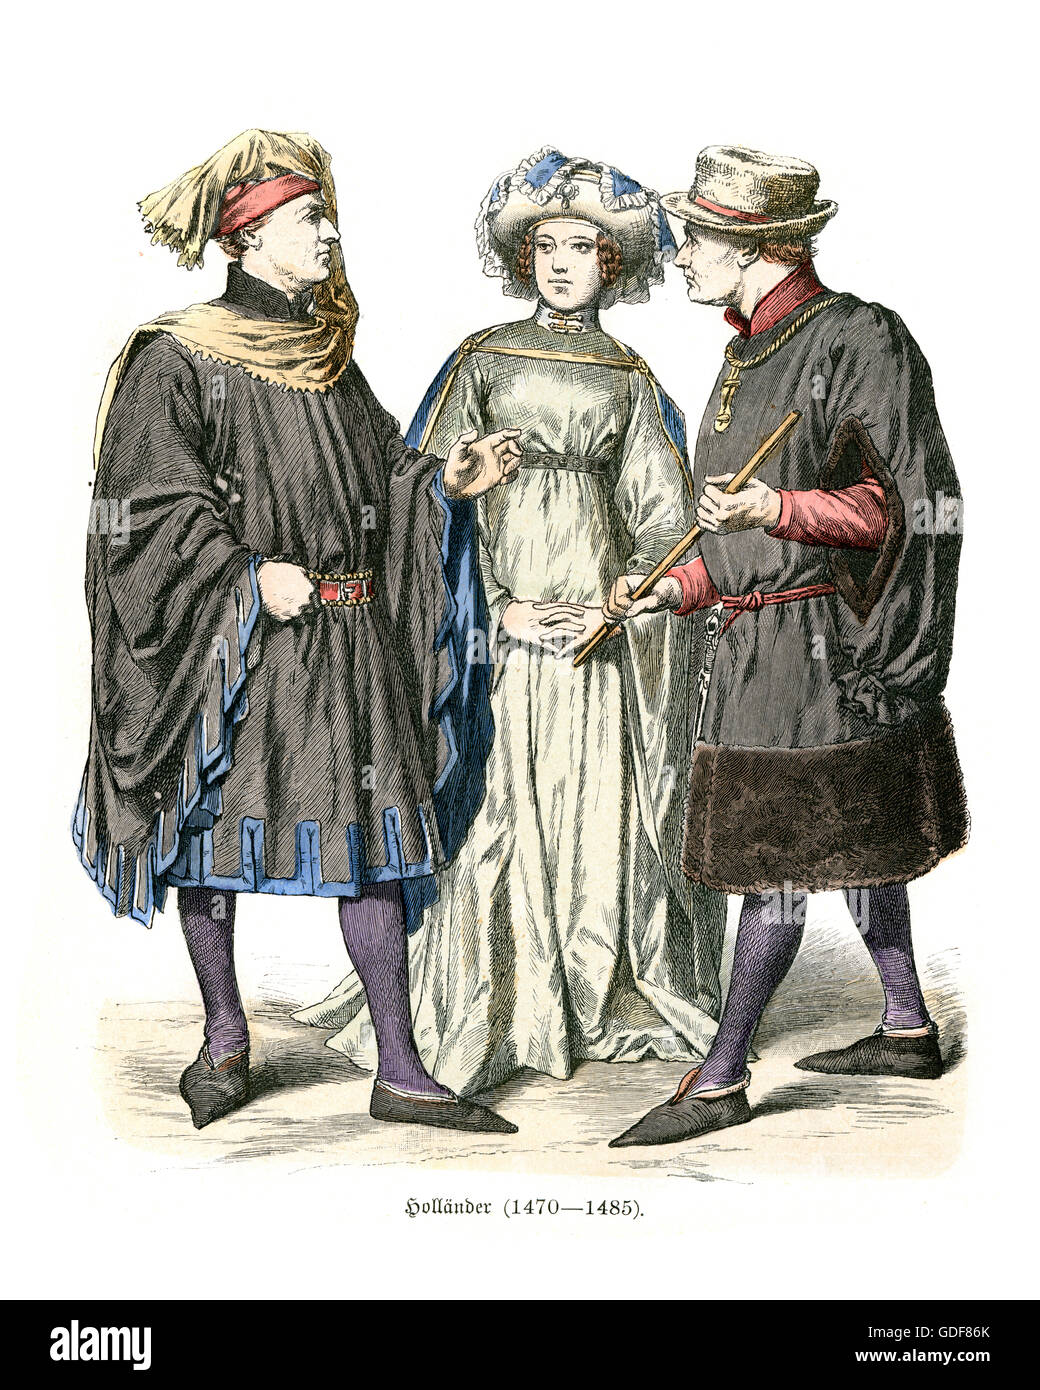 Mujer Y Hombre Románticos De Los Pares En Ropa Medieval Foto de archivo -  Imagen de traje, pares: 61647410